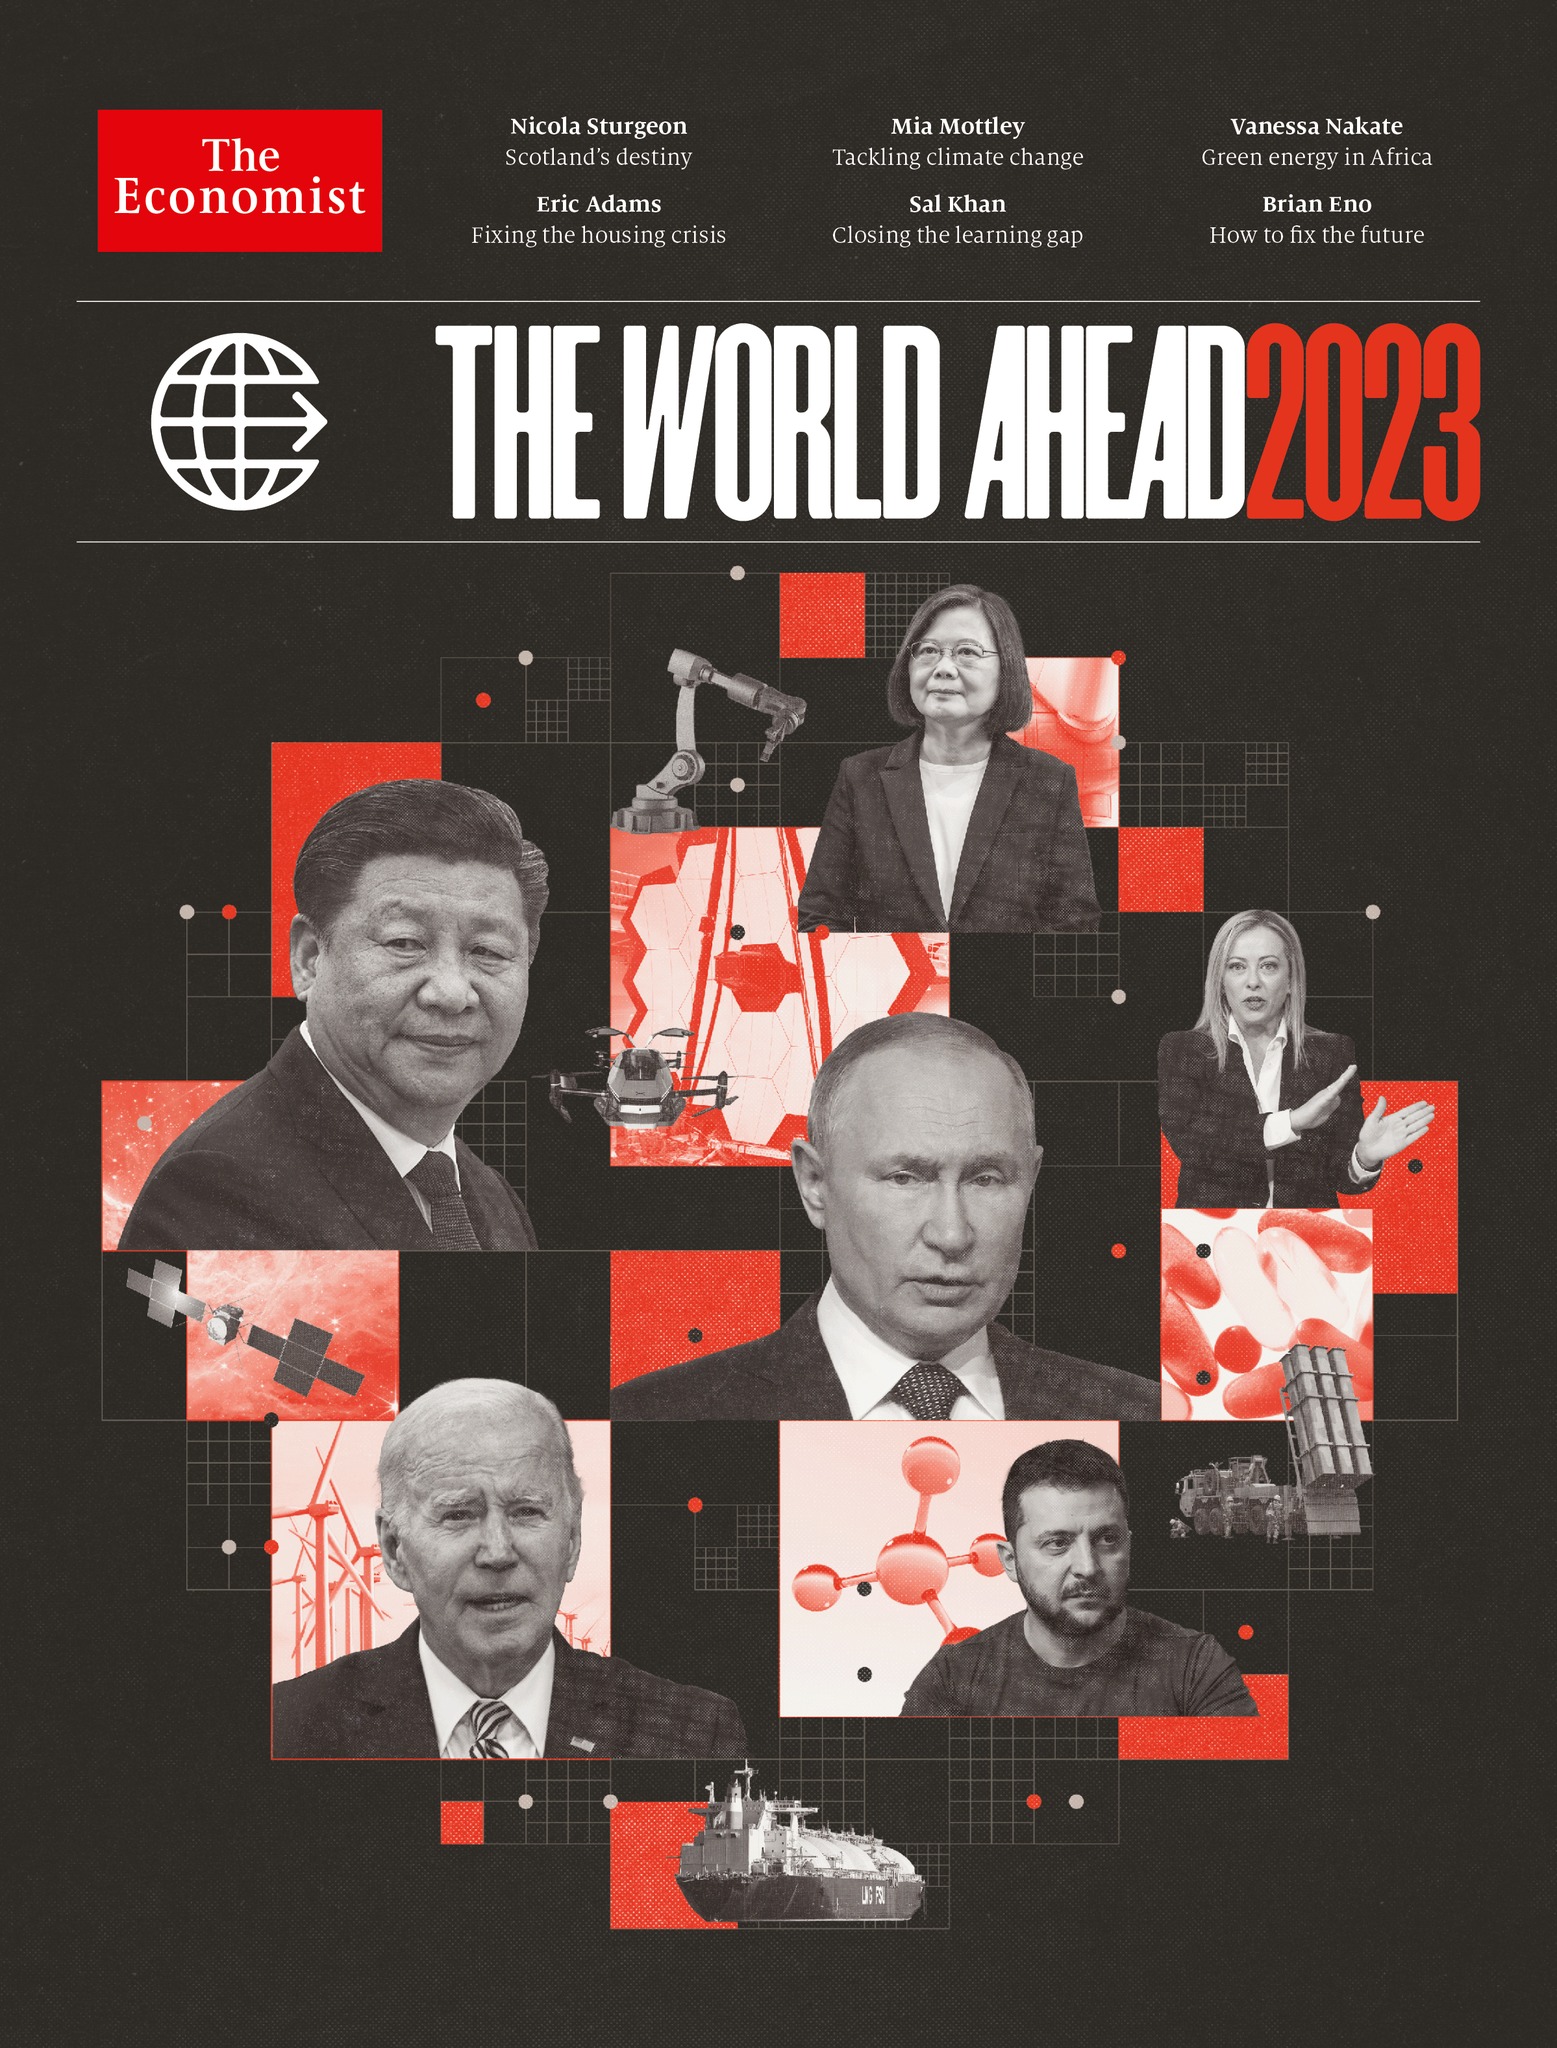 Зеленский появился на обложке издания впервые. Значит, Украина сегодня играет значительную роль в мировой политике. Фото: economist.com